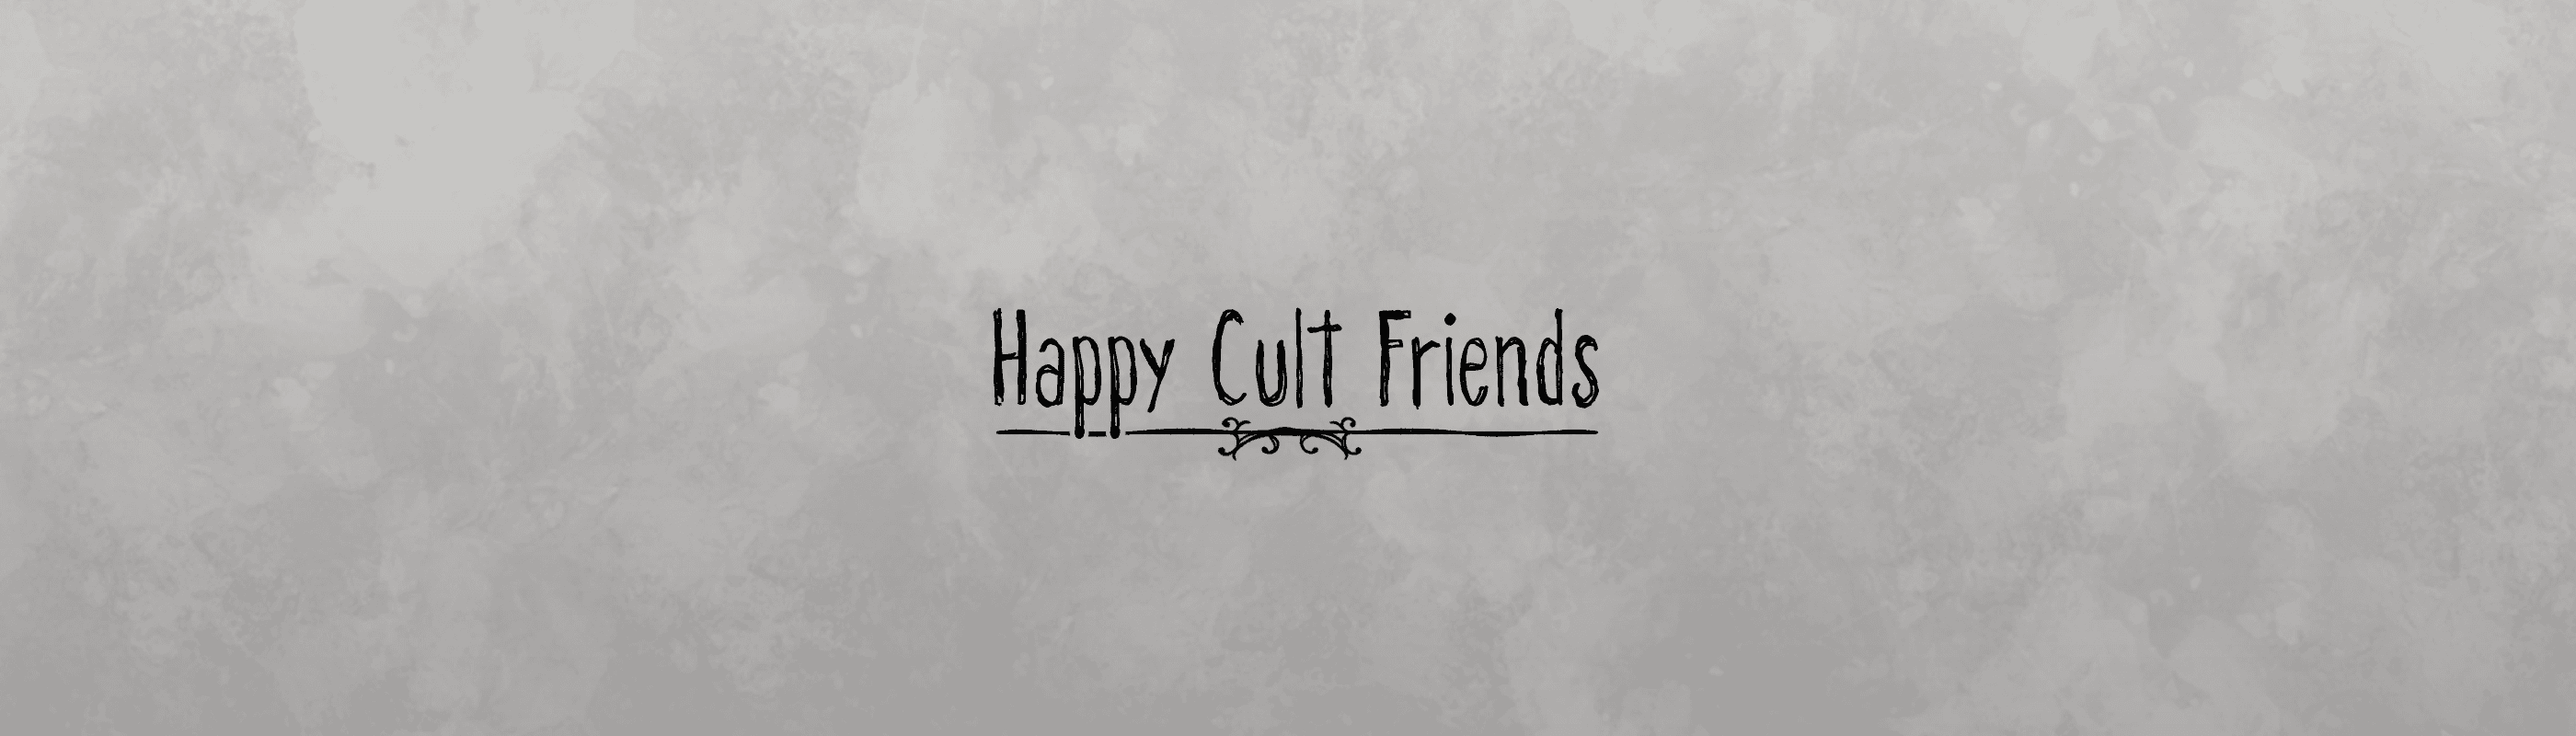 HappyCultFriends banner